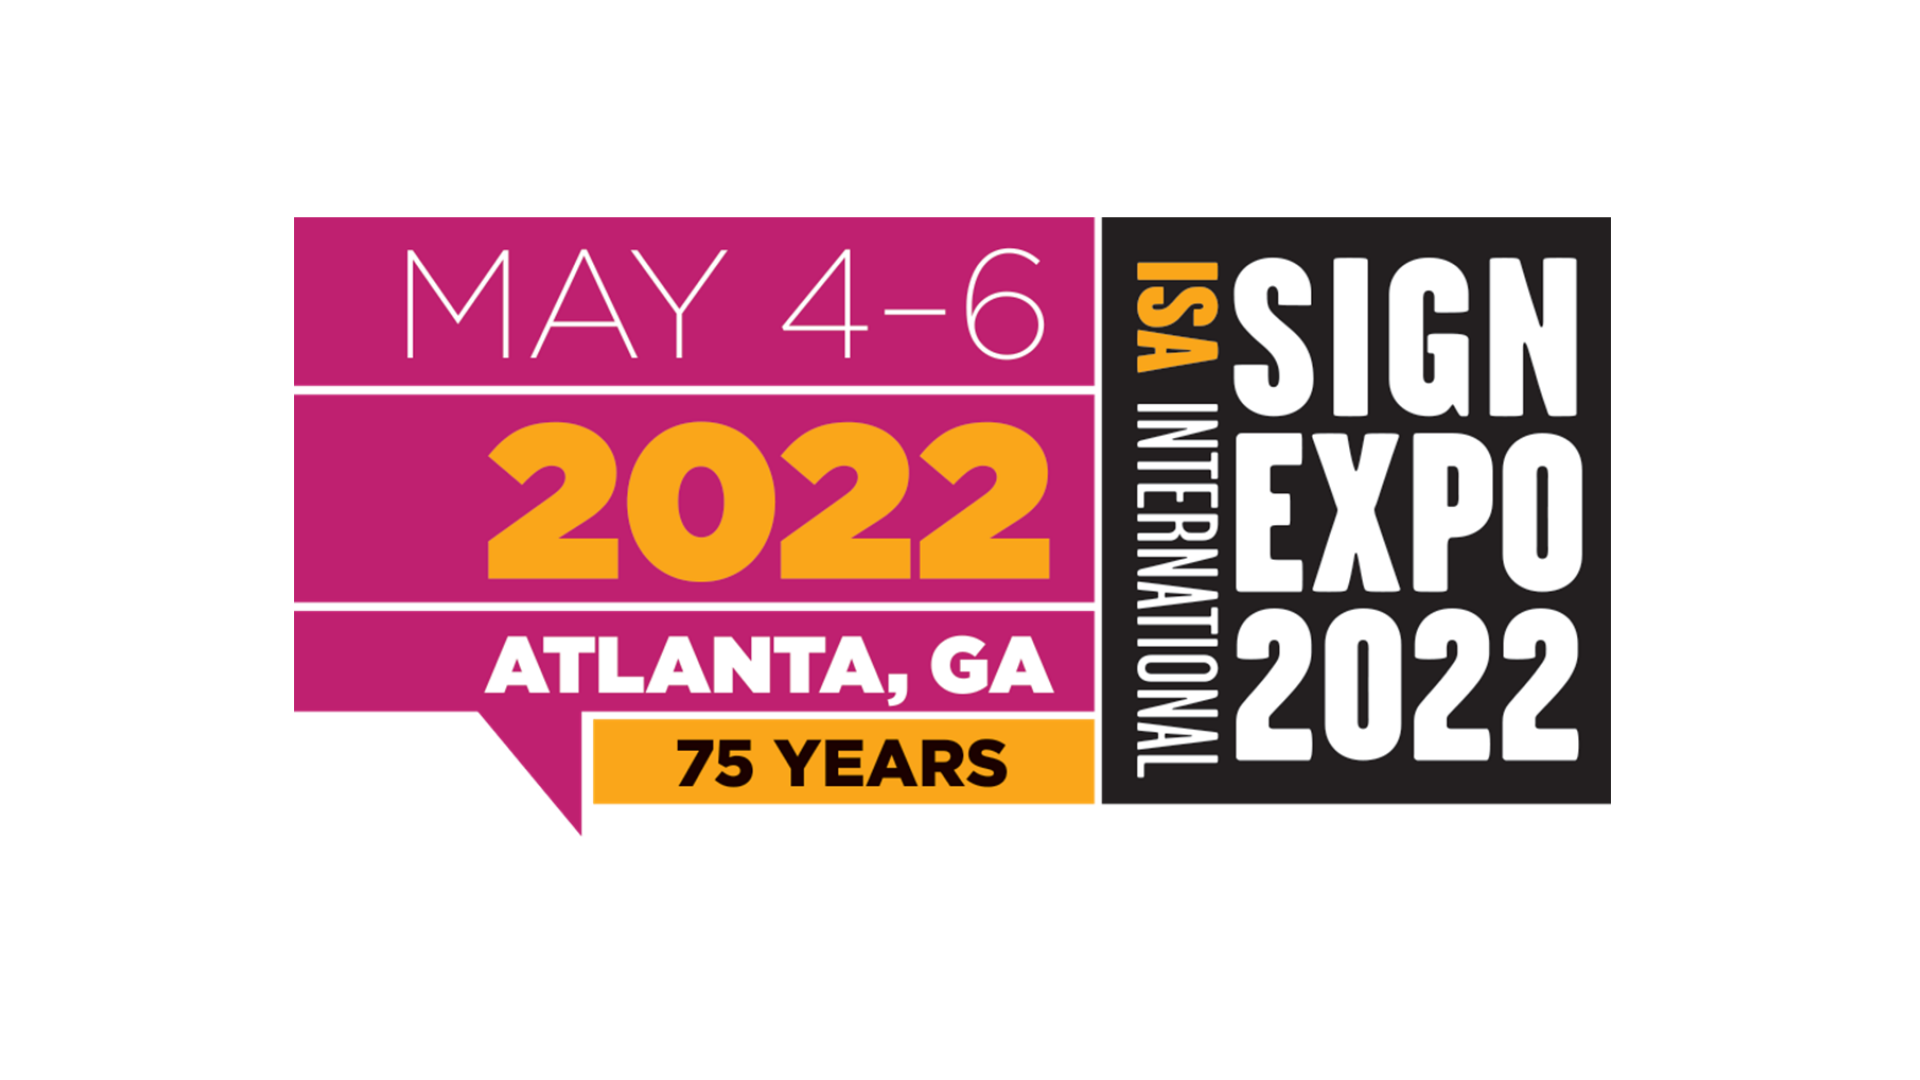 ISA Expo 2022 logo